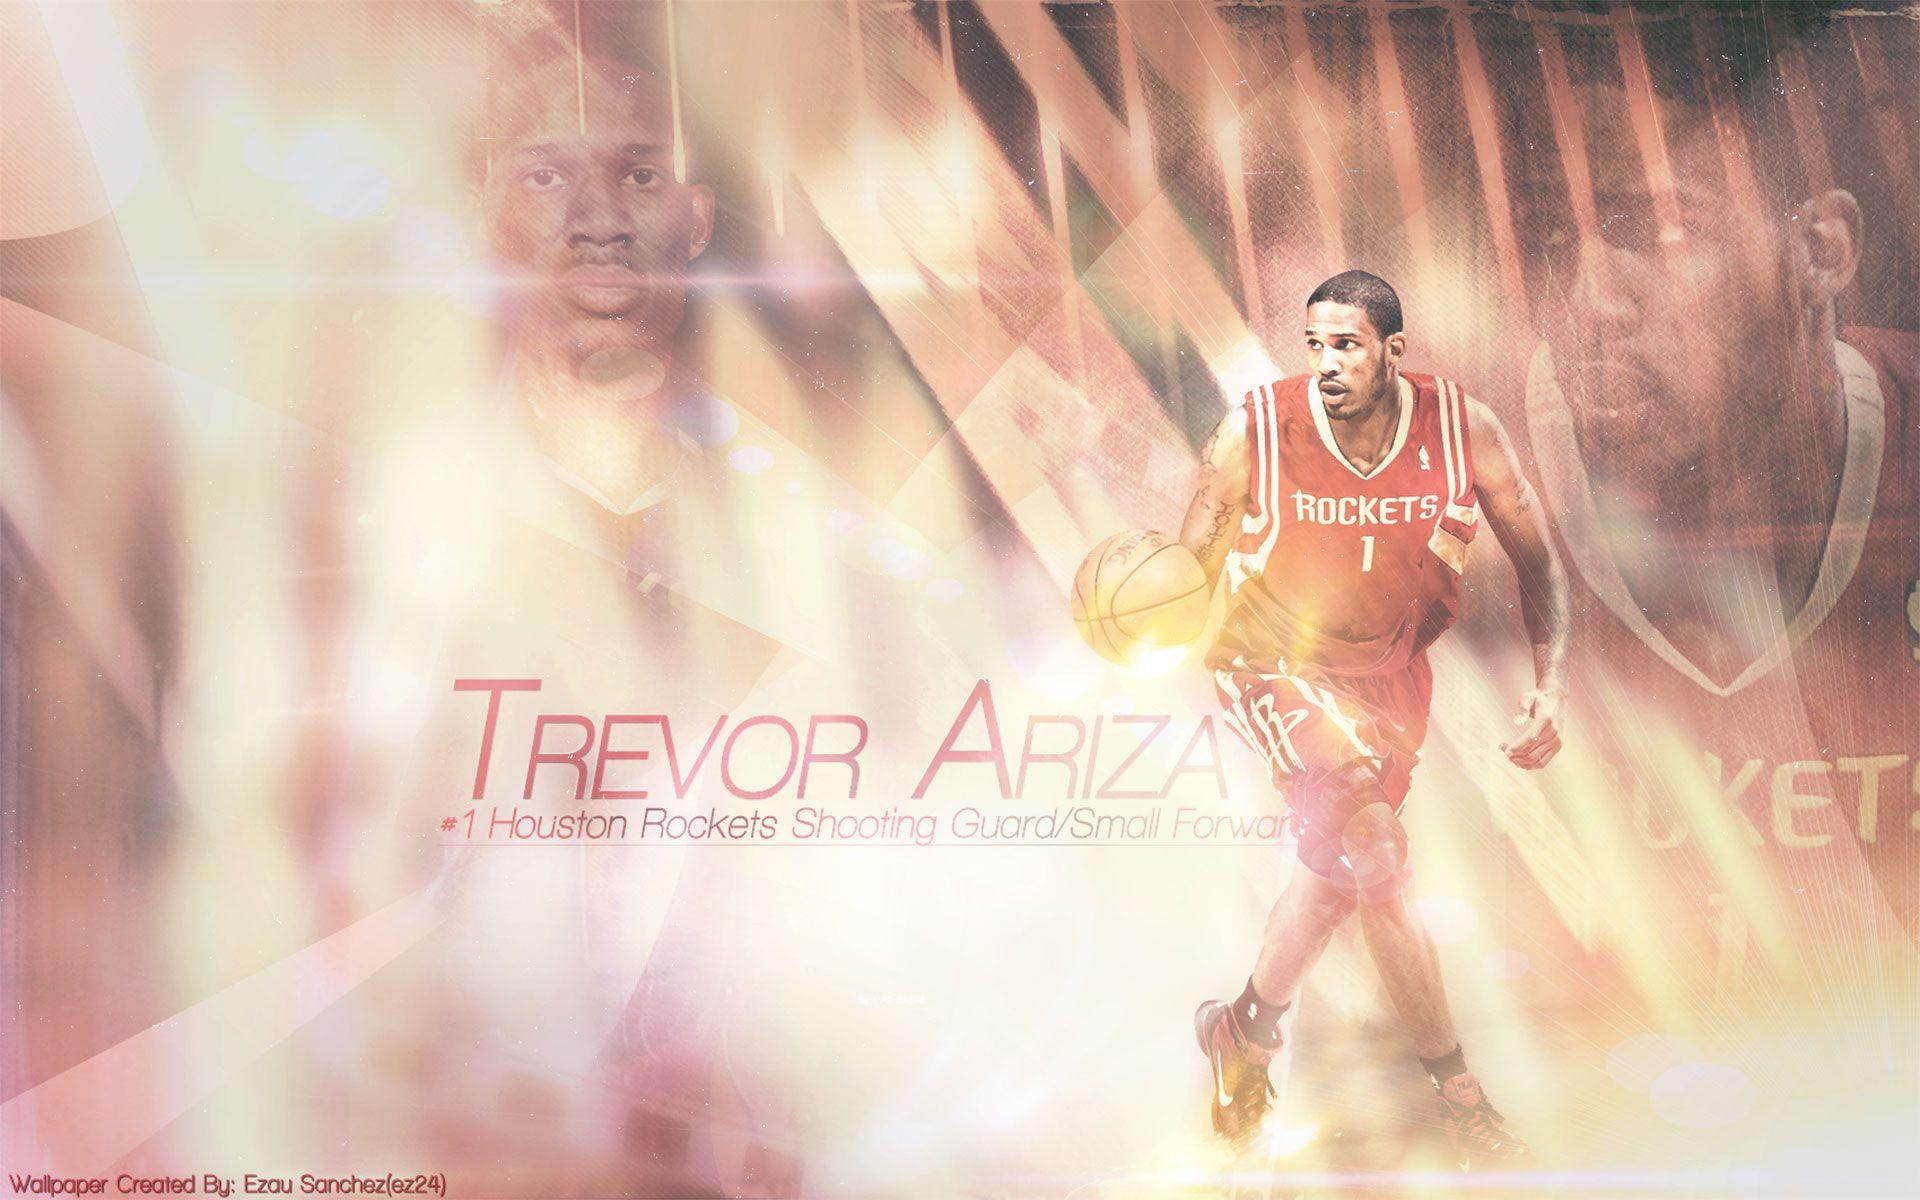 Trevor Ariza Rockets 1920×1200 Wallpaper. Basketball Wallpaper at